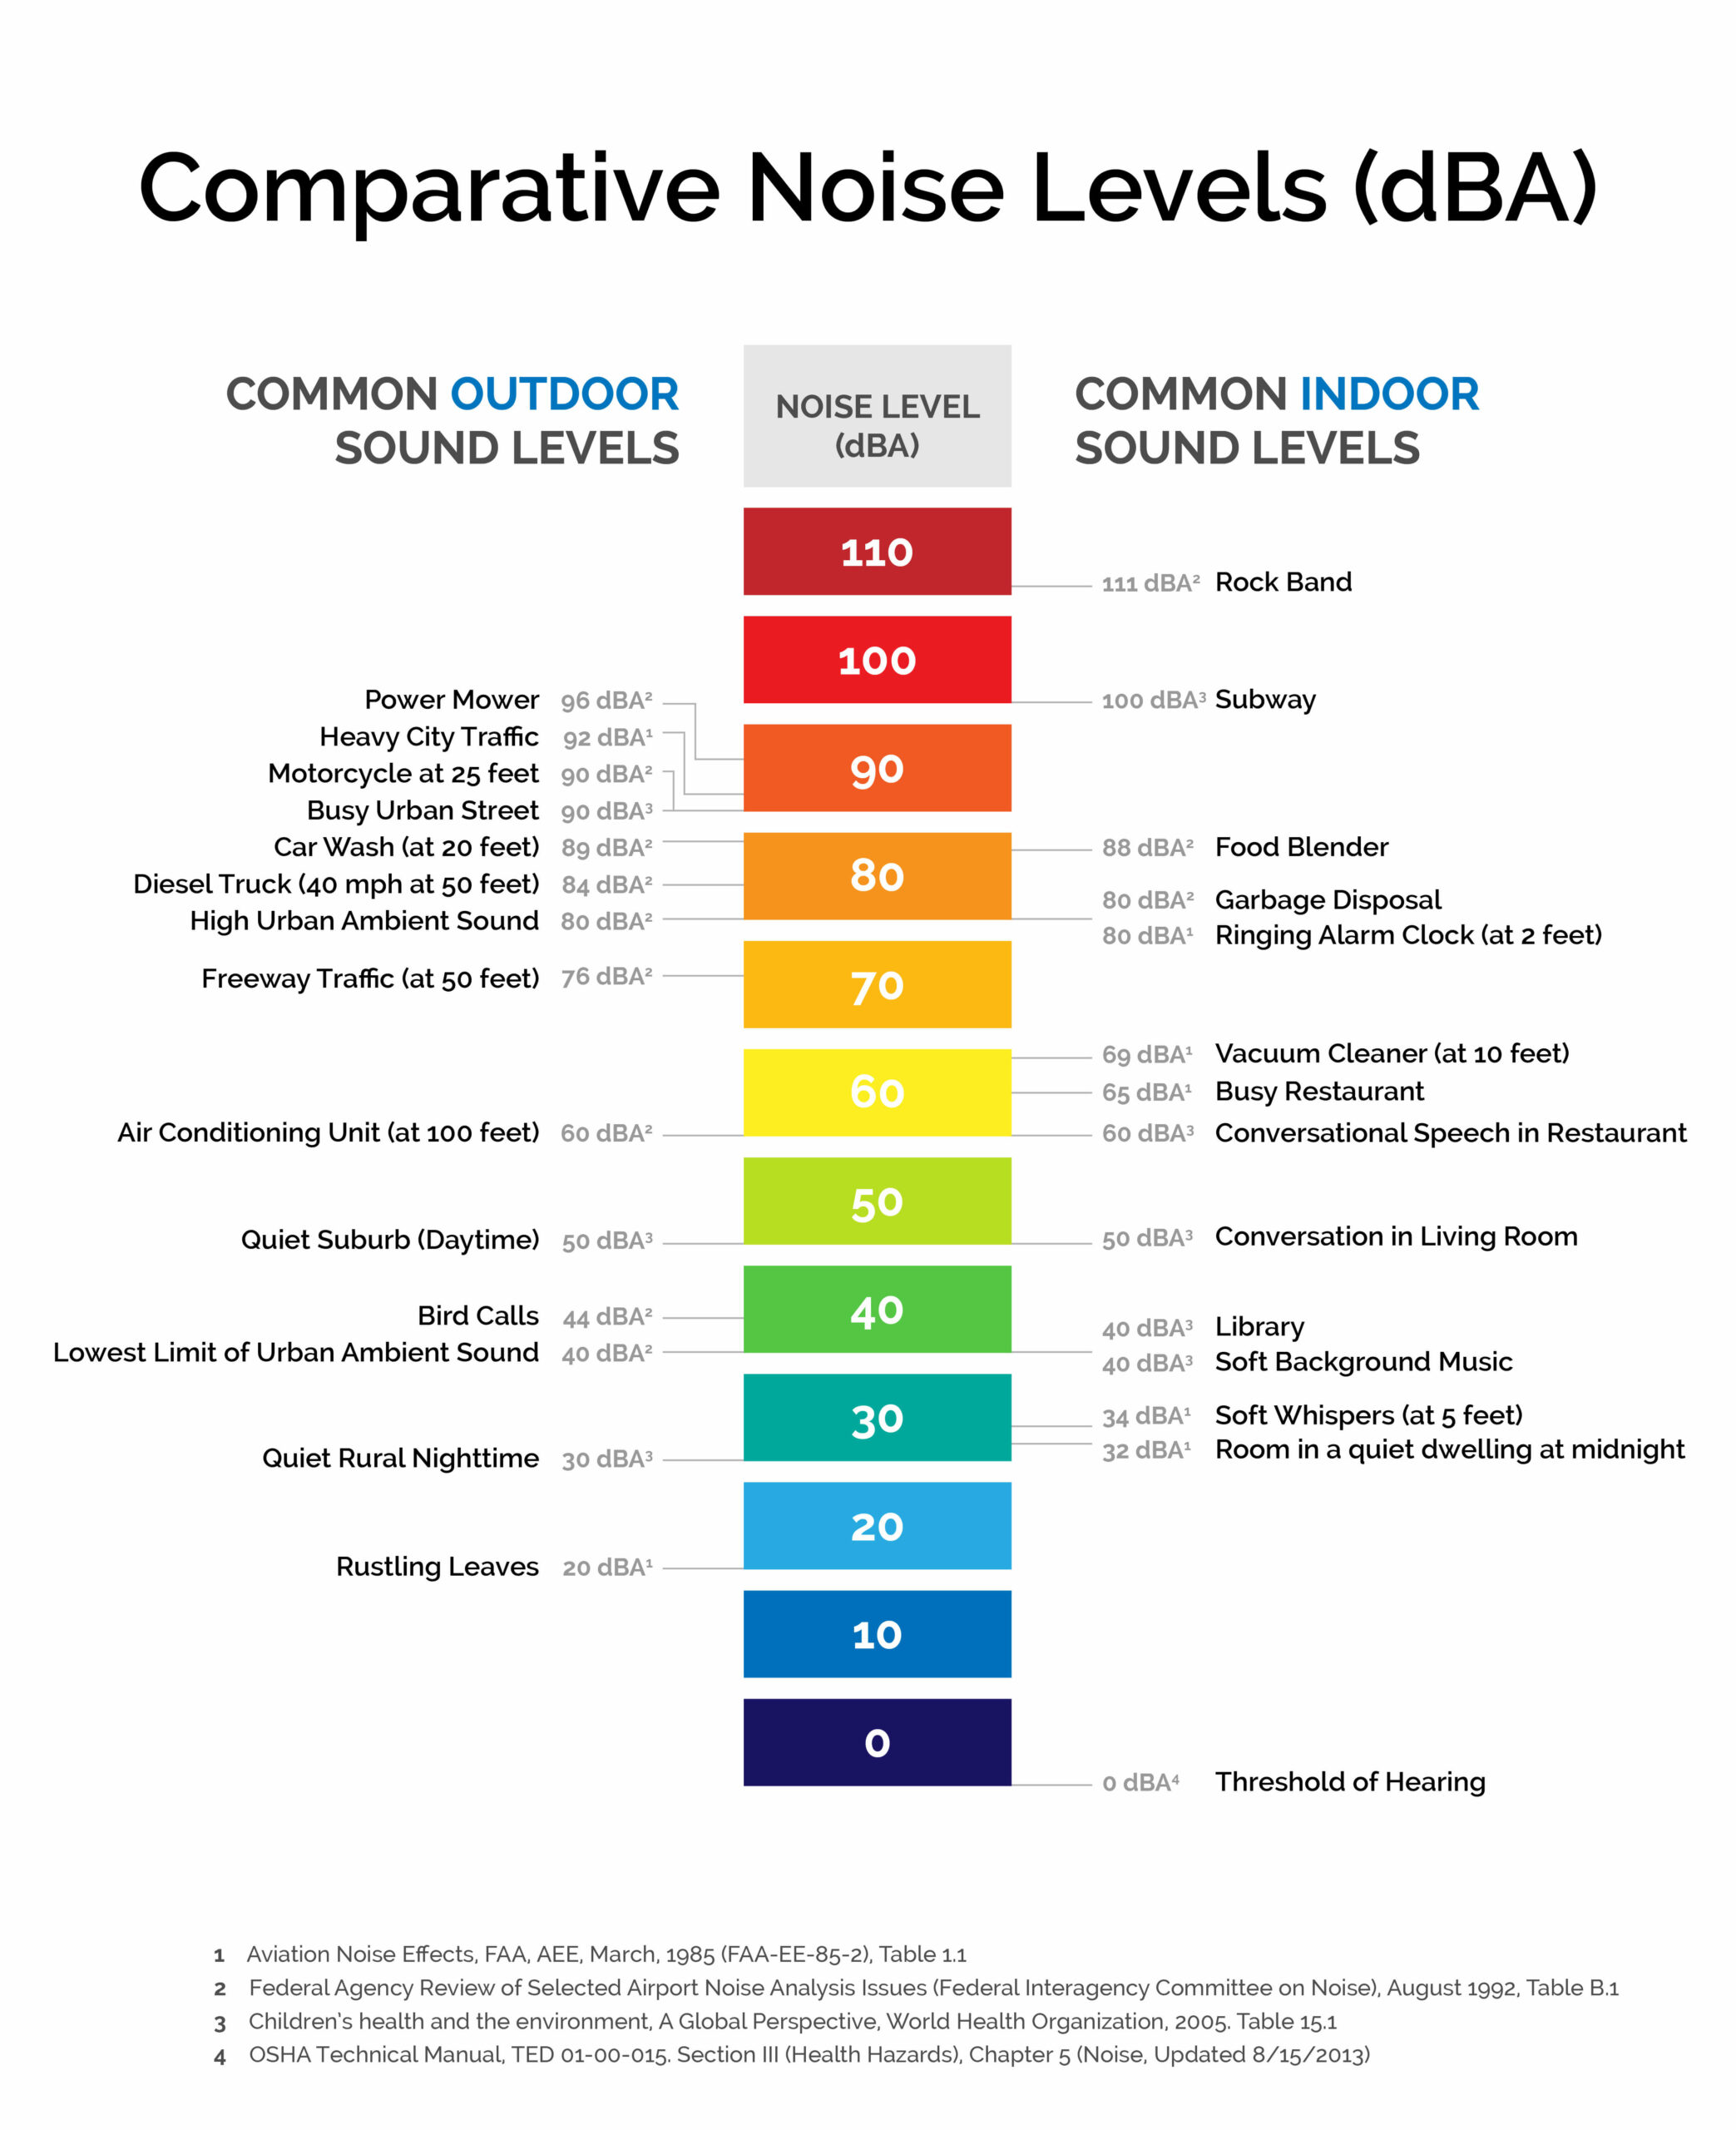 decibel scale humphrey visual filed